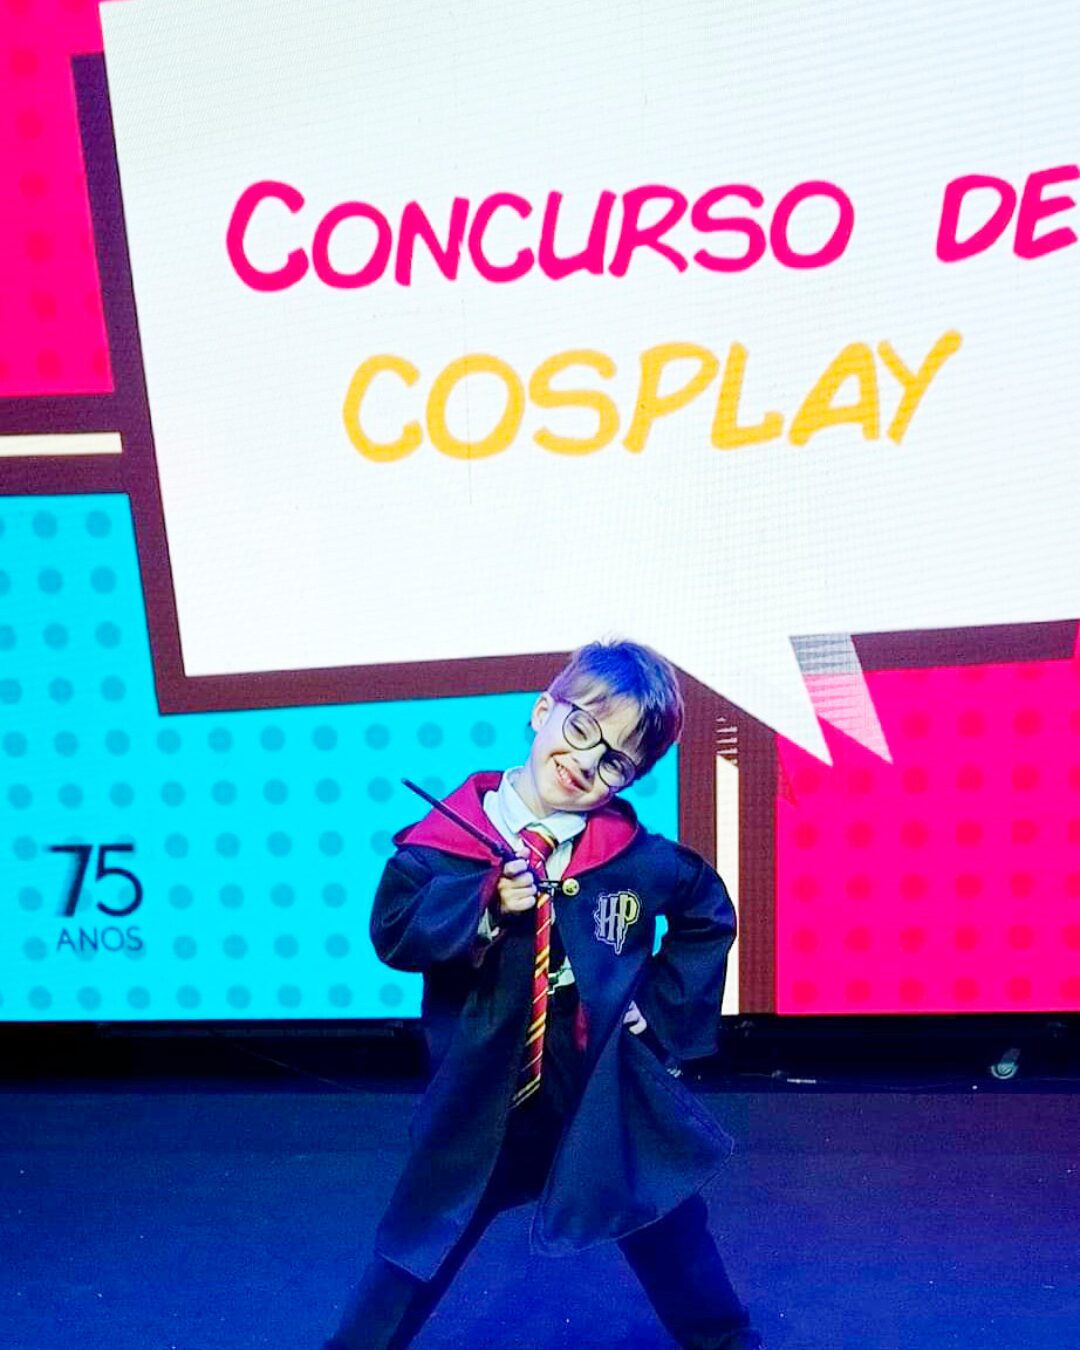 Garotinho é vice-campeão em concurso kids de cosplay